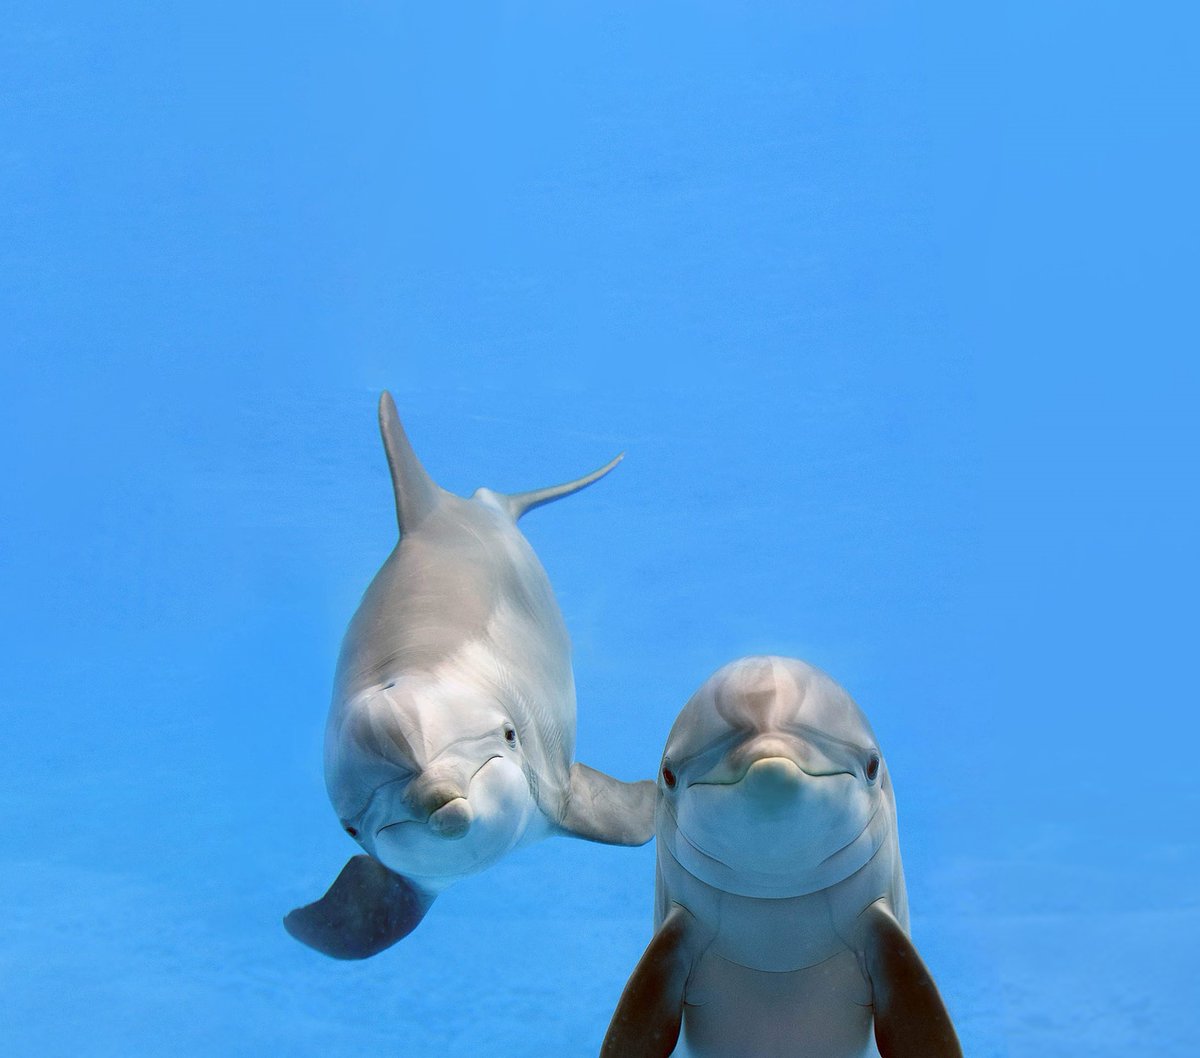 @DolphinDiscovery, marca de hábitats para la interacción con mamíferos marinos de la familia The Dolphin Company, operador de parques de presencia mundial, anunció en conferencia de prensa que a través de su programa...

lc.cx/v5yLr7